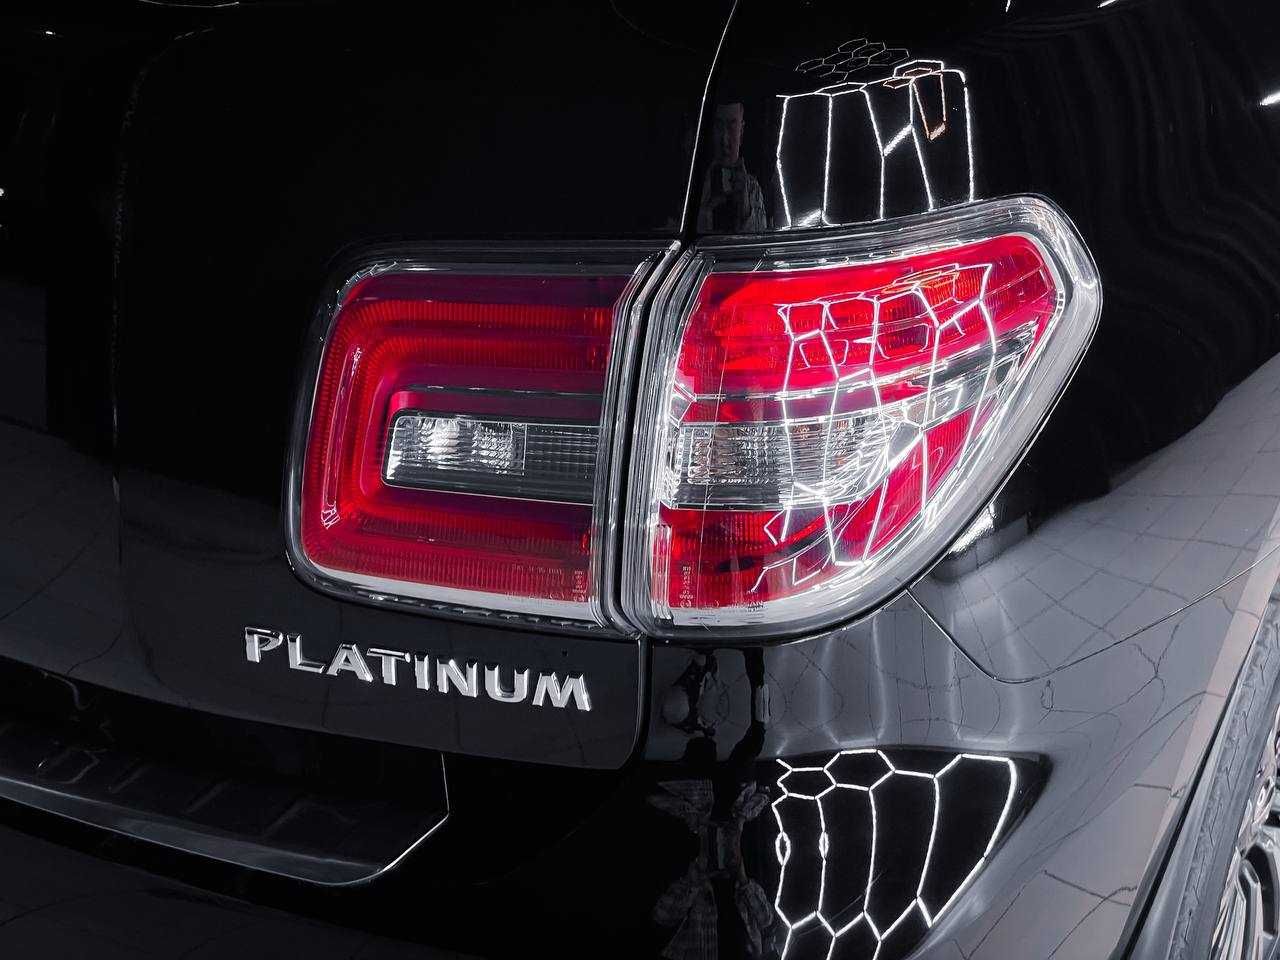 Продаётся автомобиль Nissan Patrol Platinum максимальной комплектации